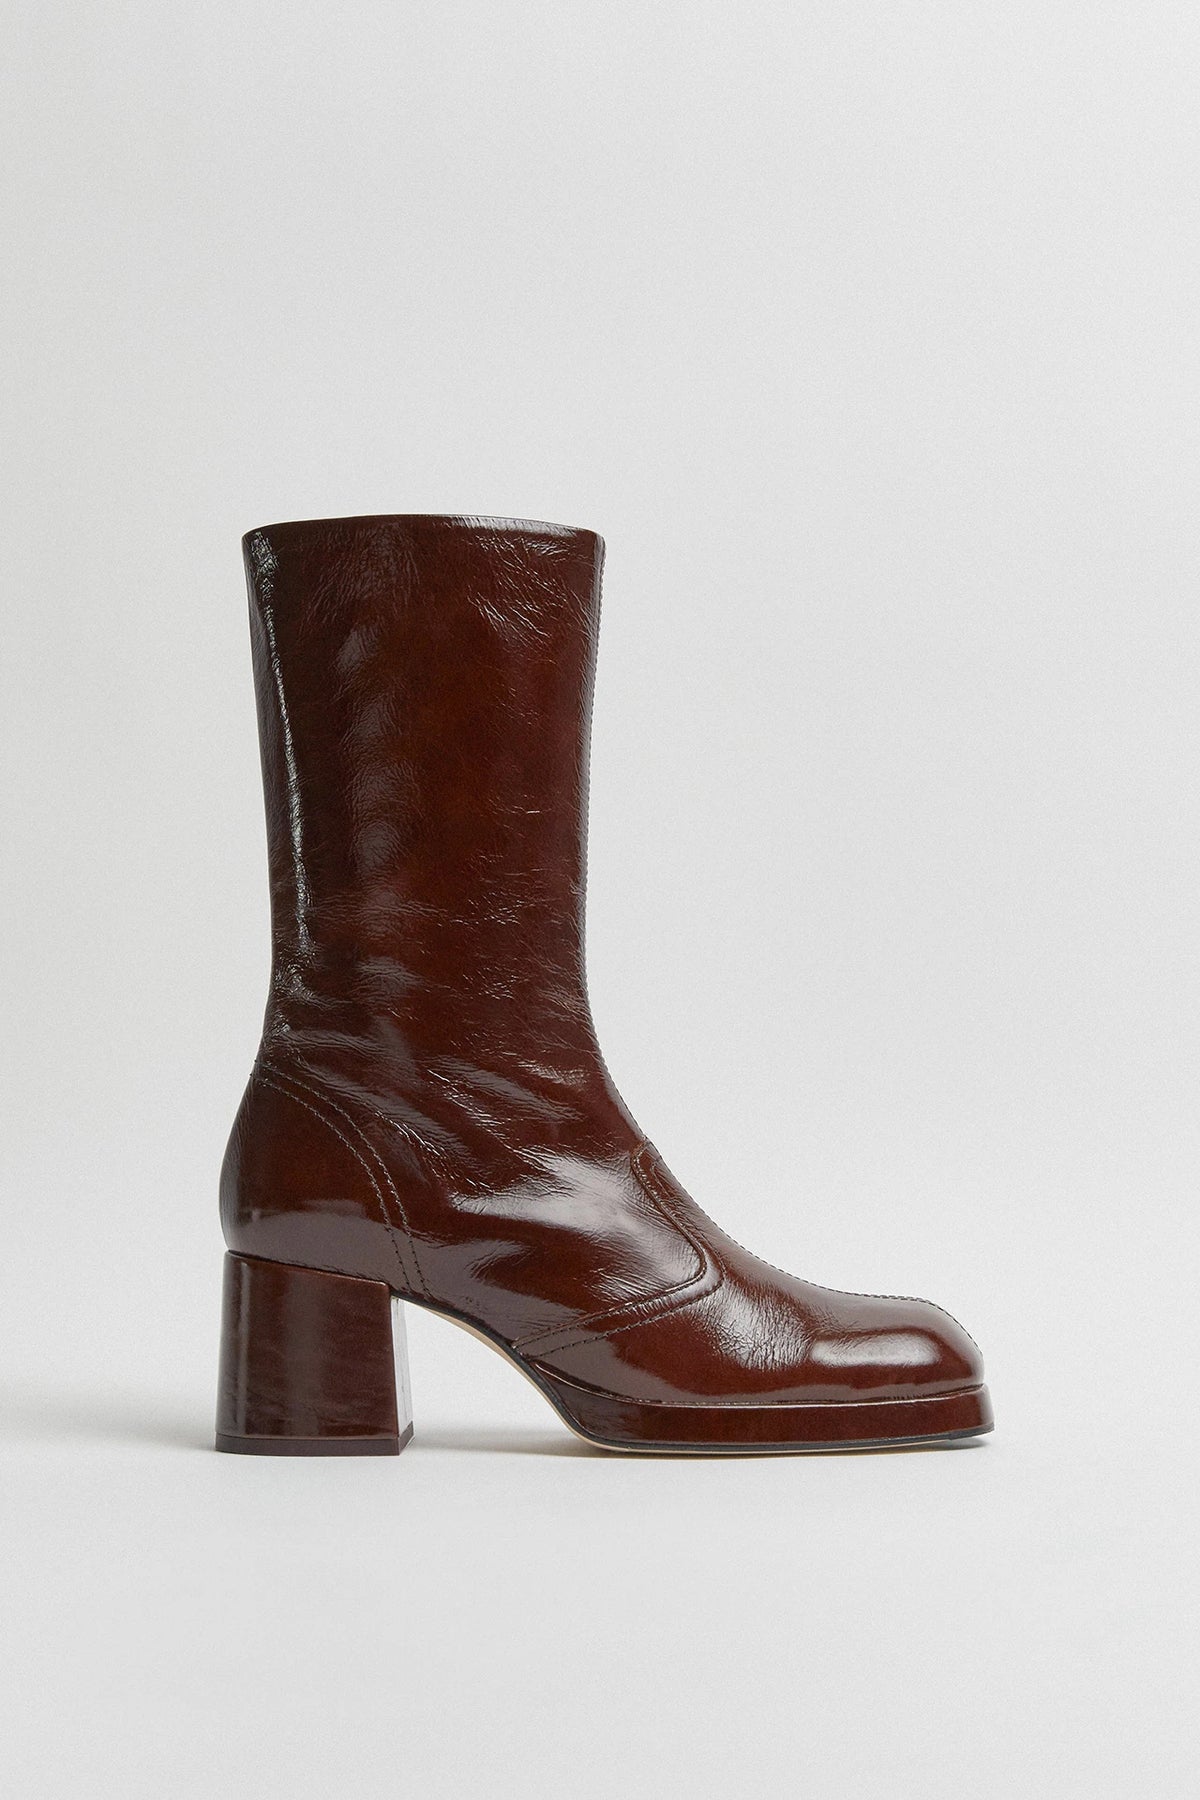 Miista Cass Boots // Brown Patent